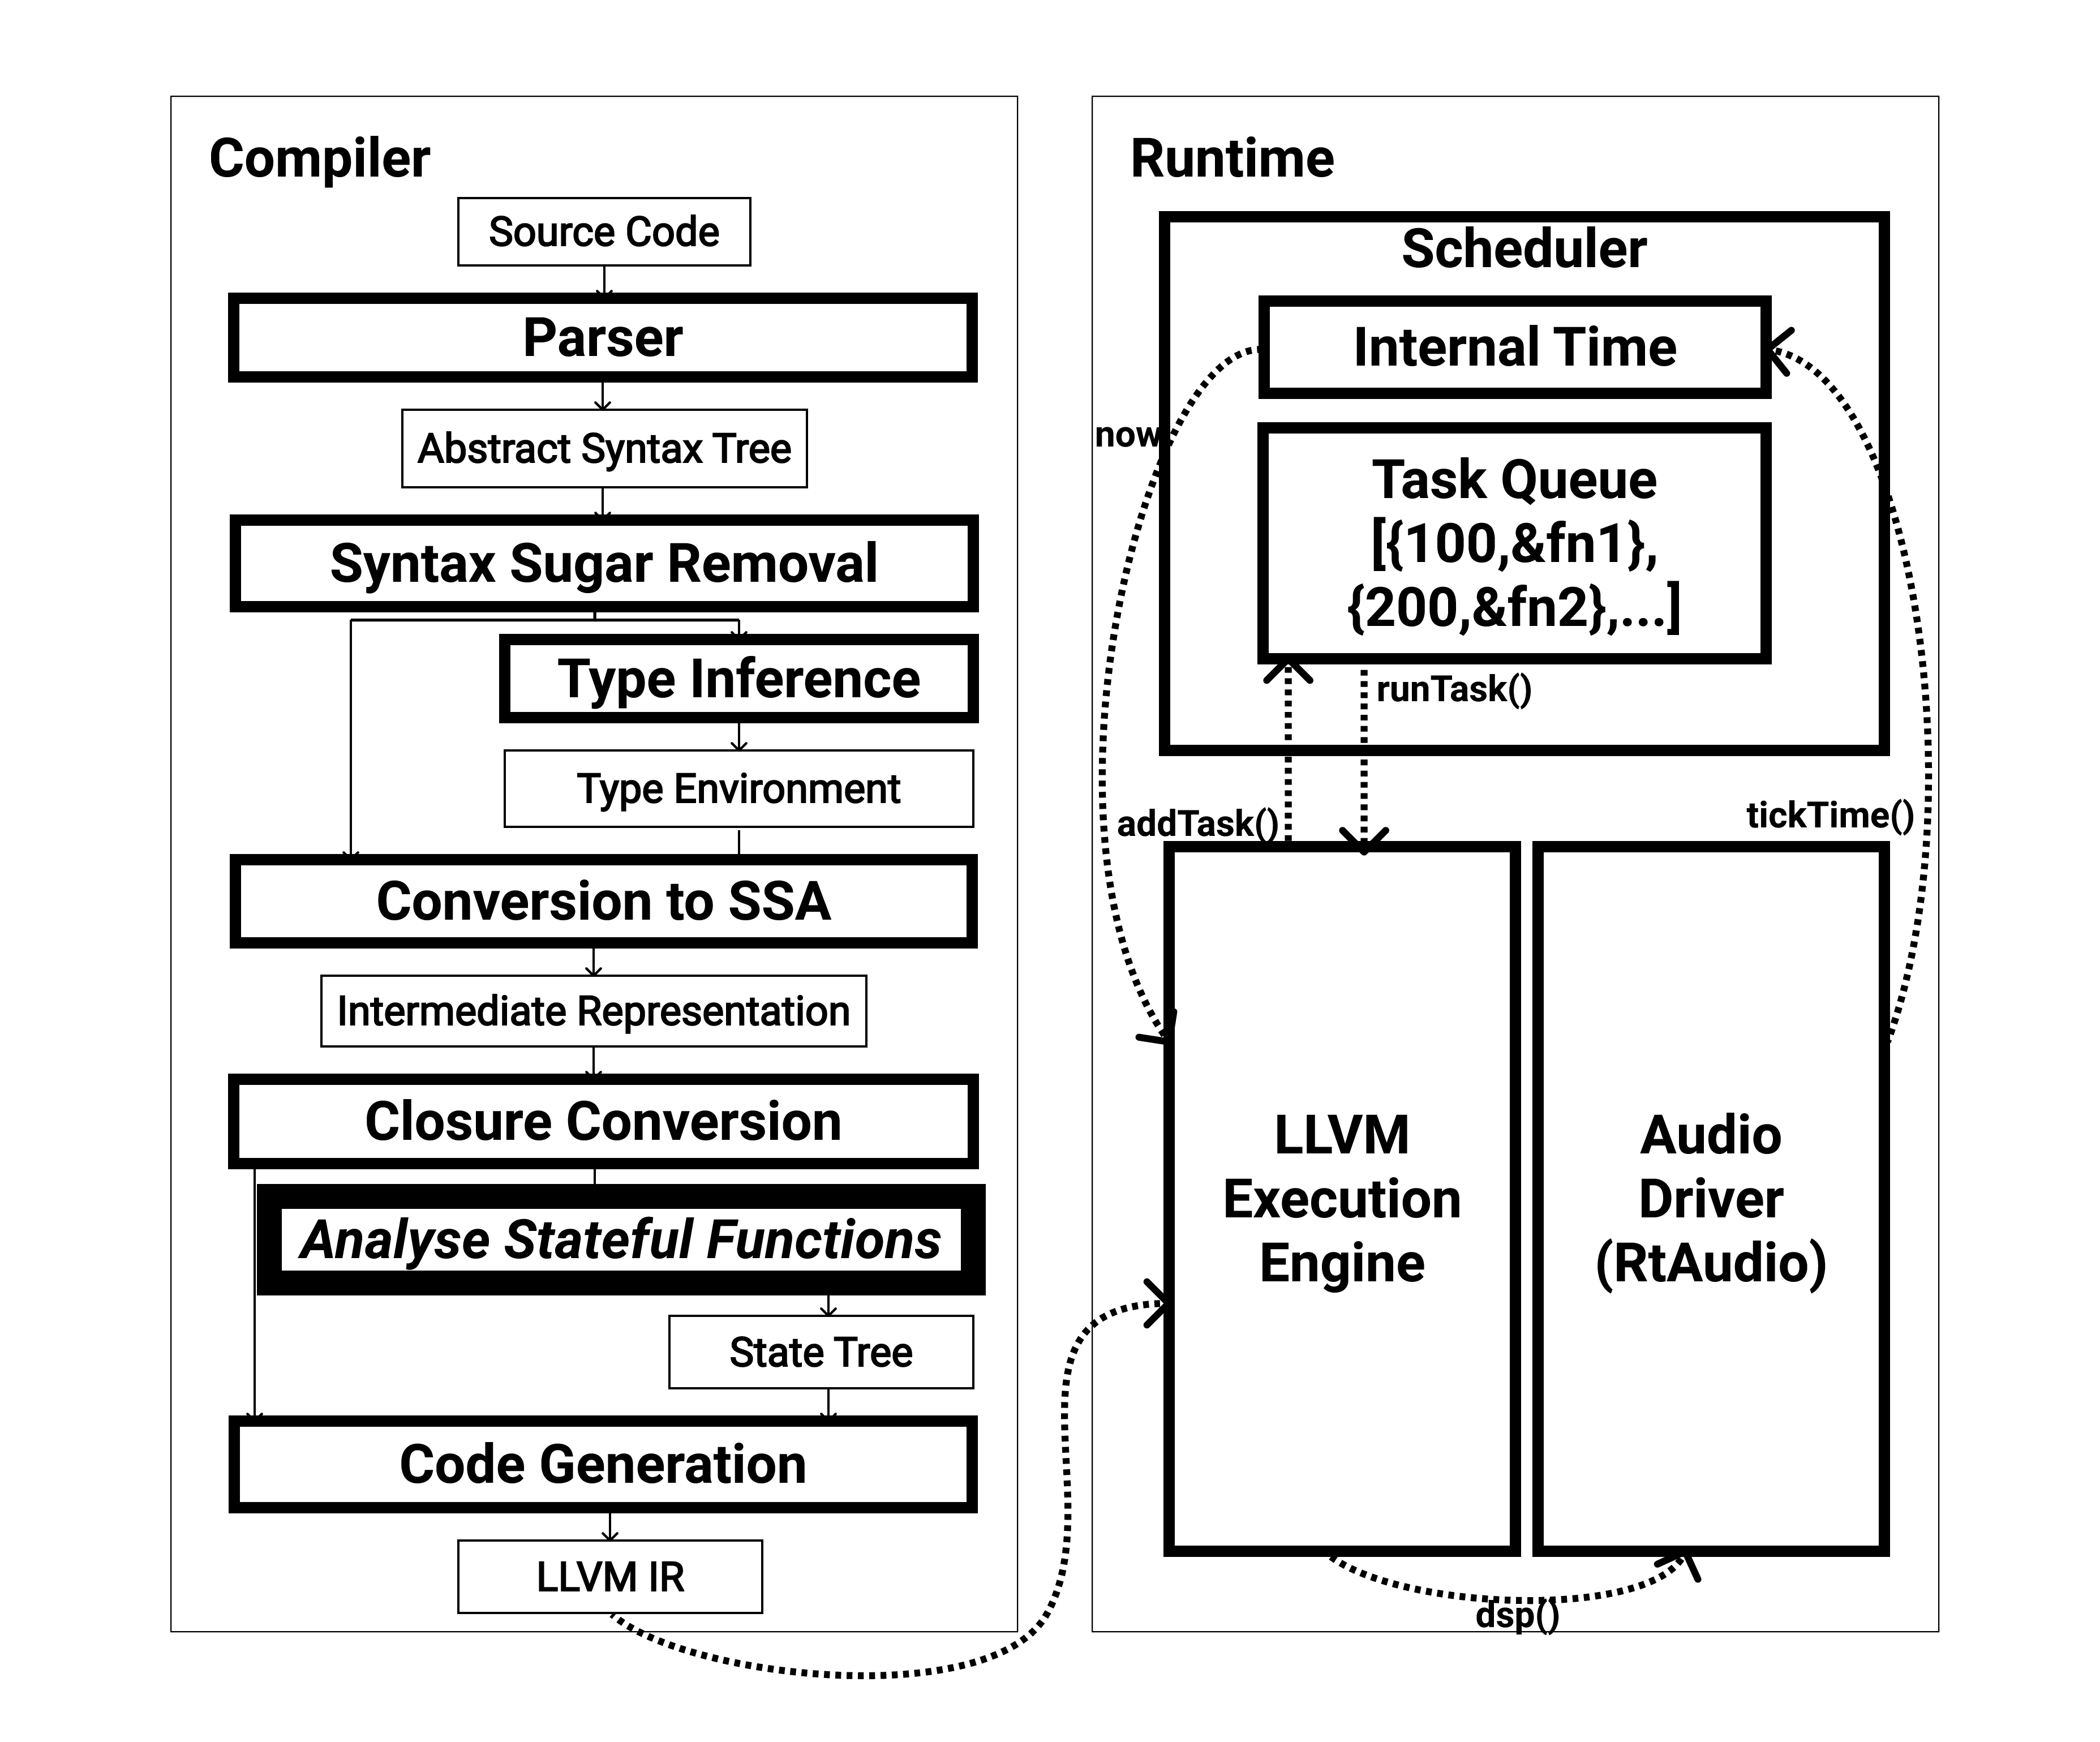 図 1: mimiumのコンパイラとランタイムのアーキテクチャの構成。